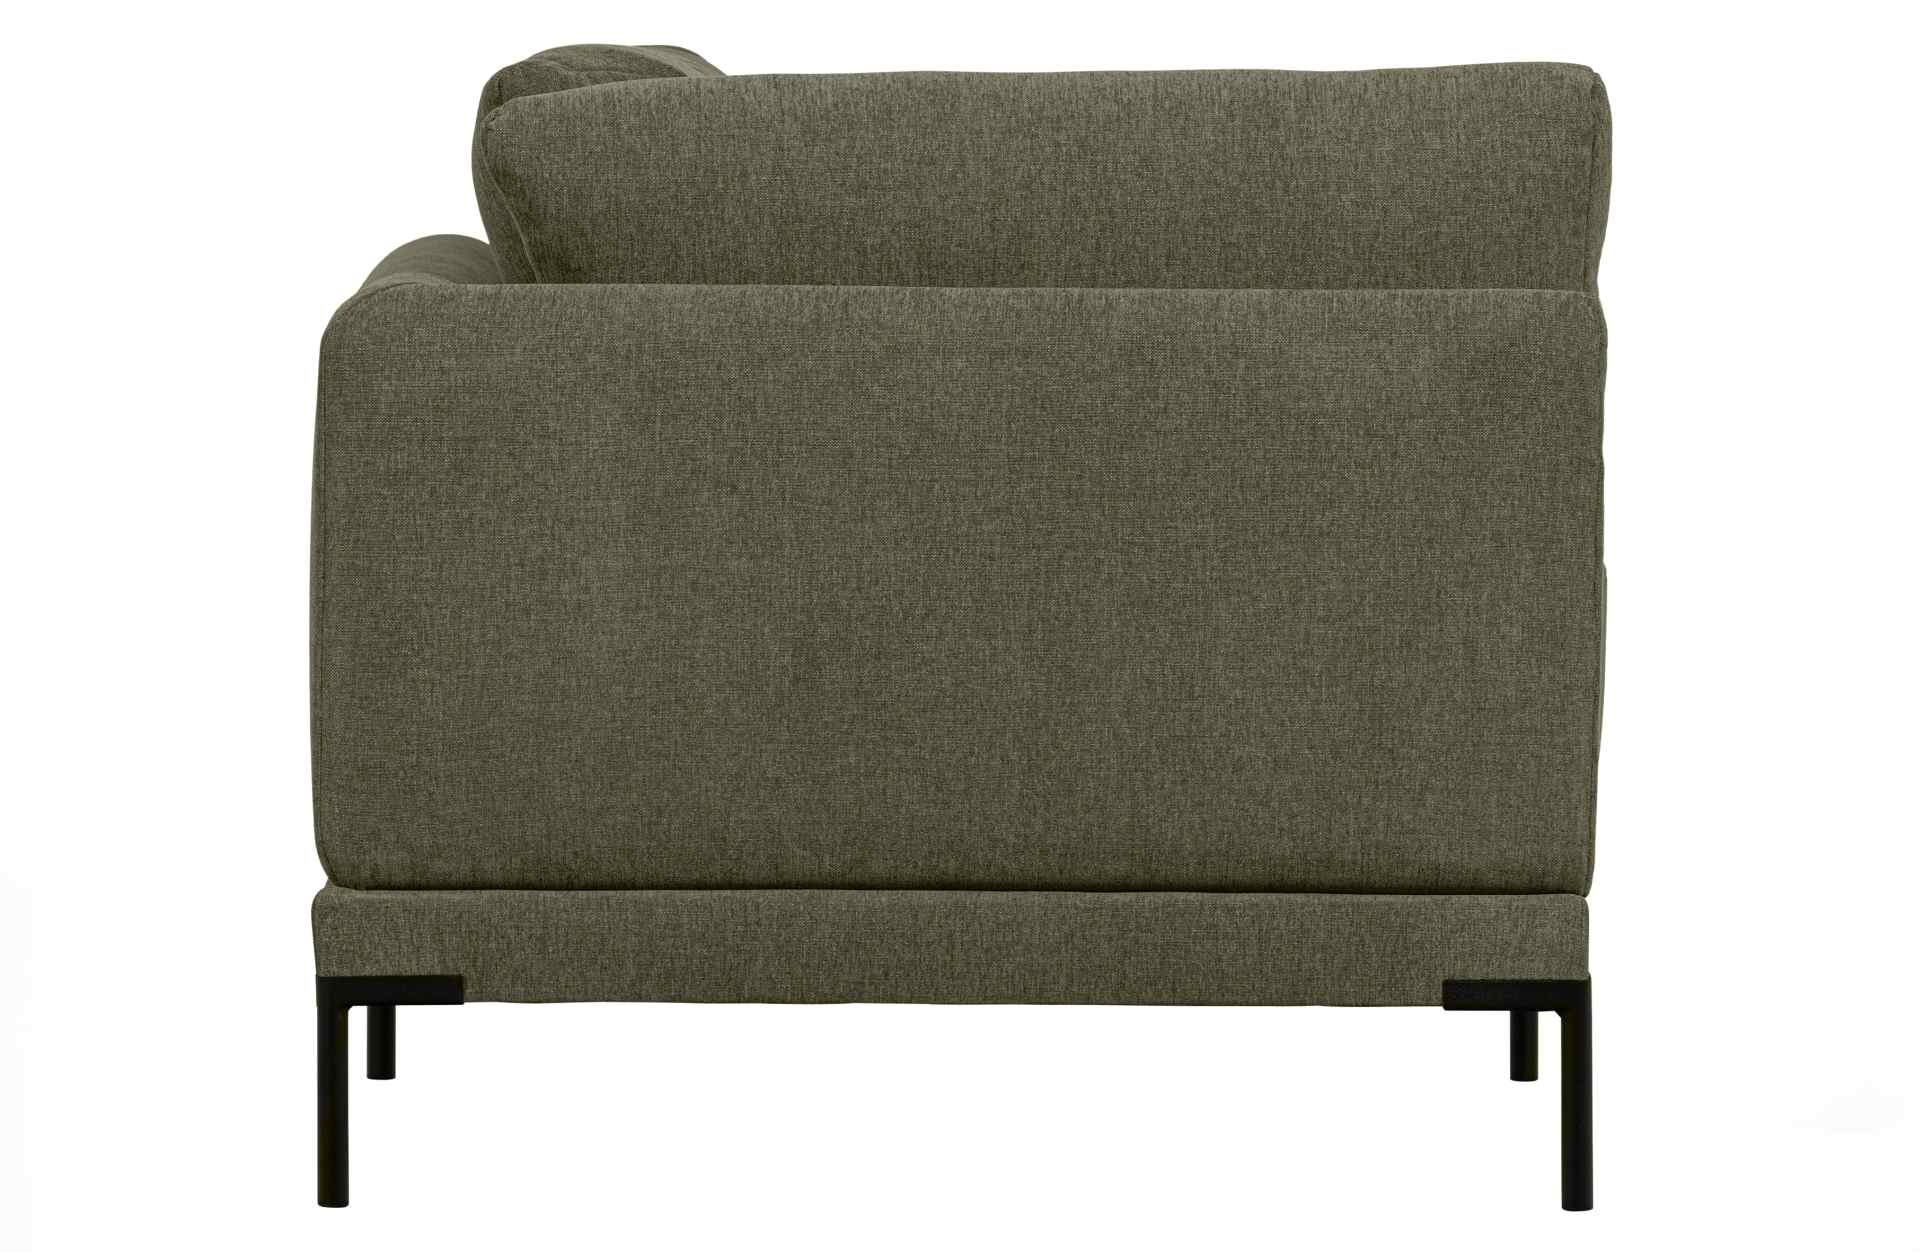 Das Modulsofa Couple Lounge überzeugt mit seinem modernen Design. Das Eck-Element wurde aus Melange Stoff gefertigt, welcher einen einen grünen Farbton besitzen. Das Gestell ist aus Metall und hat eine schwarze Farbe. Das Element hat eine Länge von 100 cm